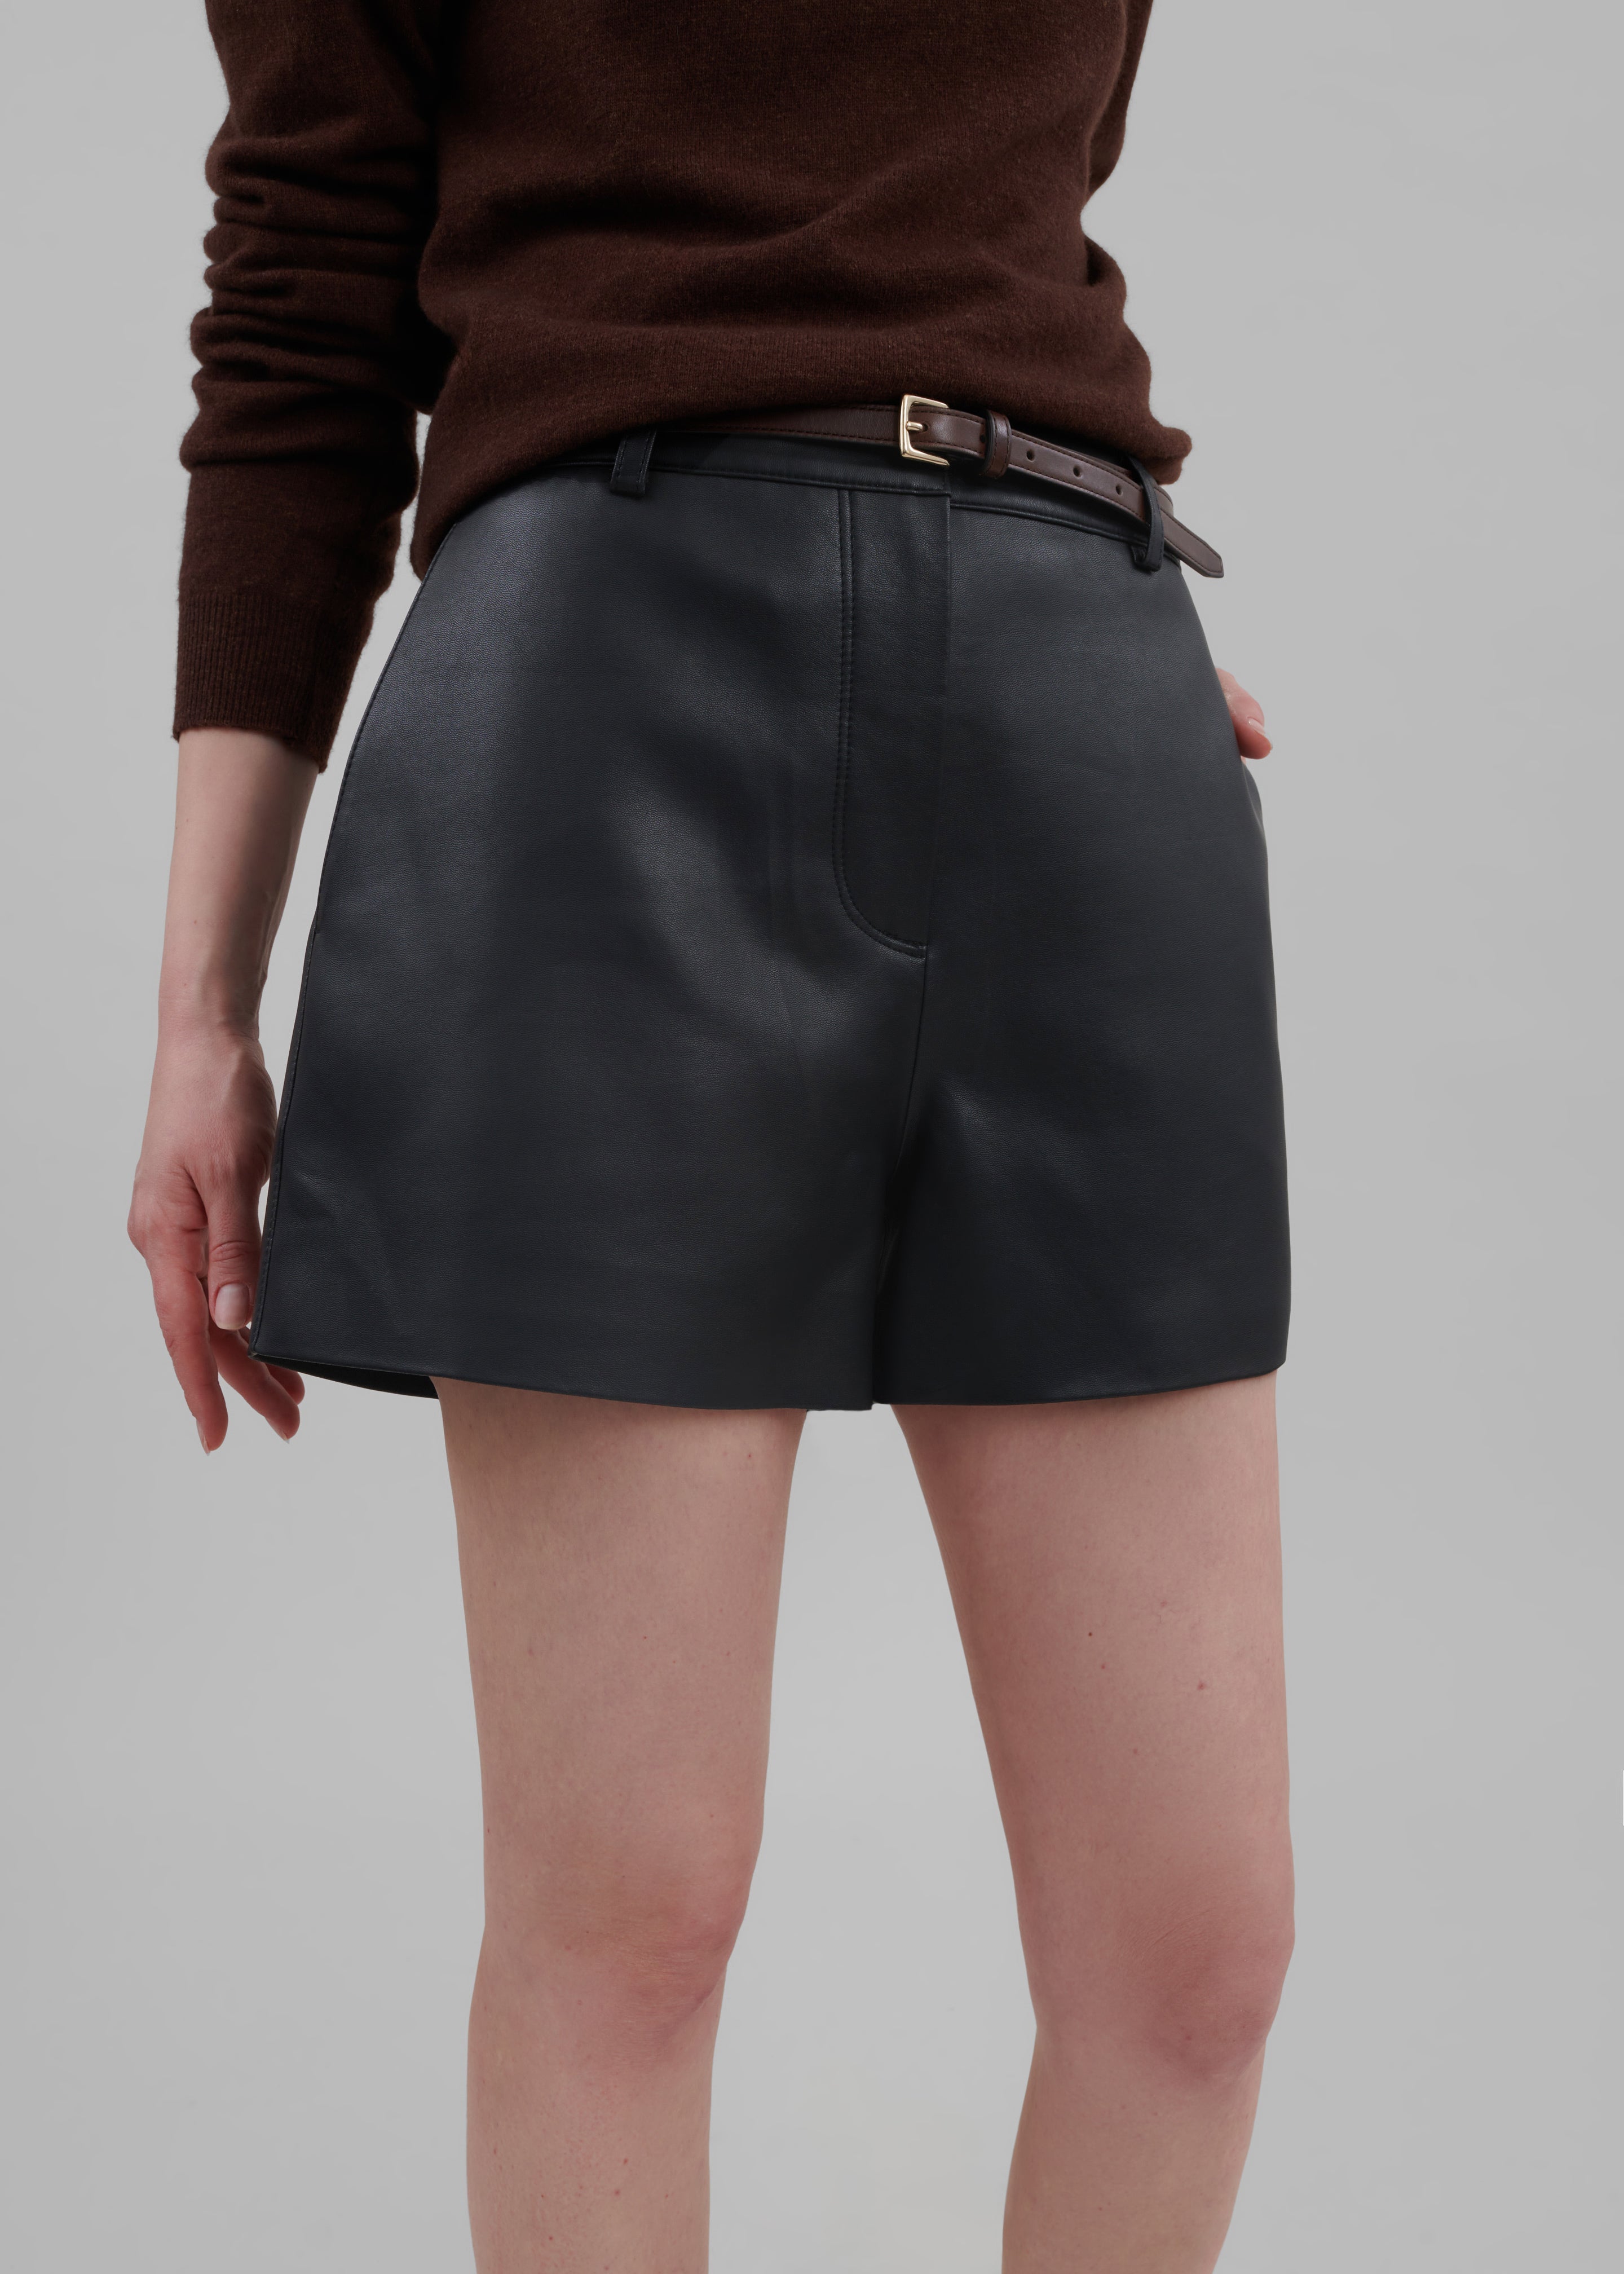 Cassie Faux Leather Mini Shorts - Black - 4